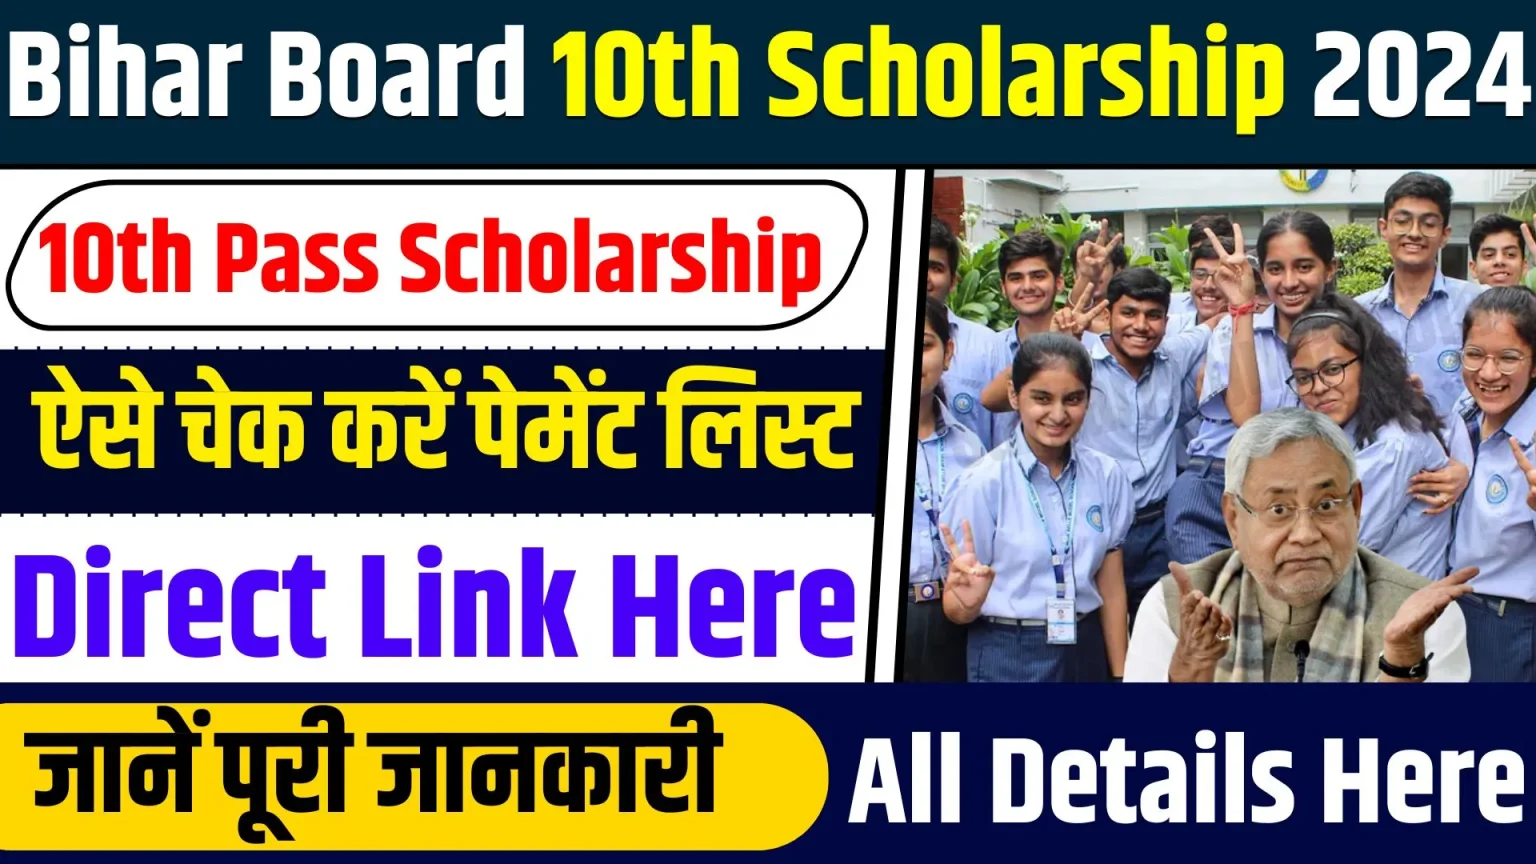 Bihar Board 10th Scholarship 2024: बिहार बोर्ड मैट्रिक पास ₹10,000 स्कॉलरशिप,ऐसे चेक करें पेमेंट लिस्ट डायरेक्ट लिंक